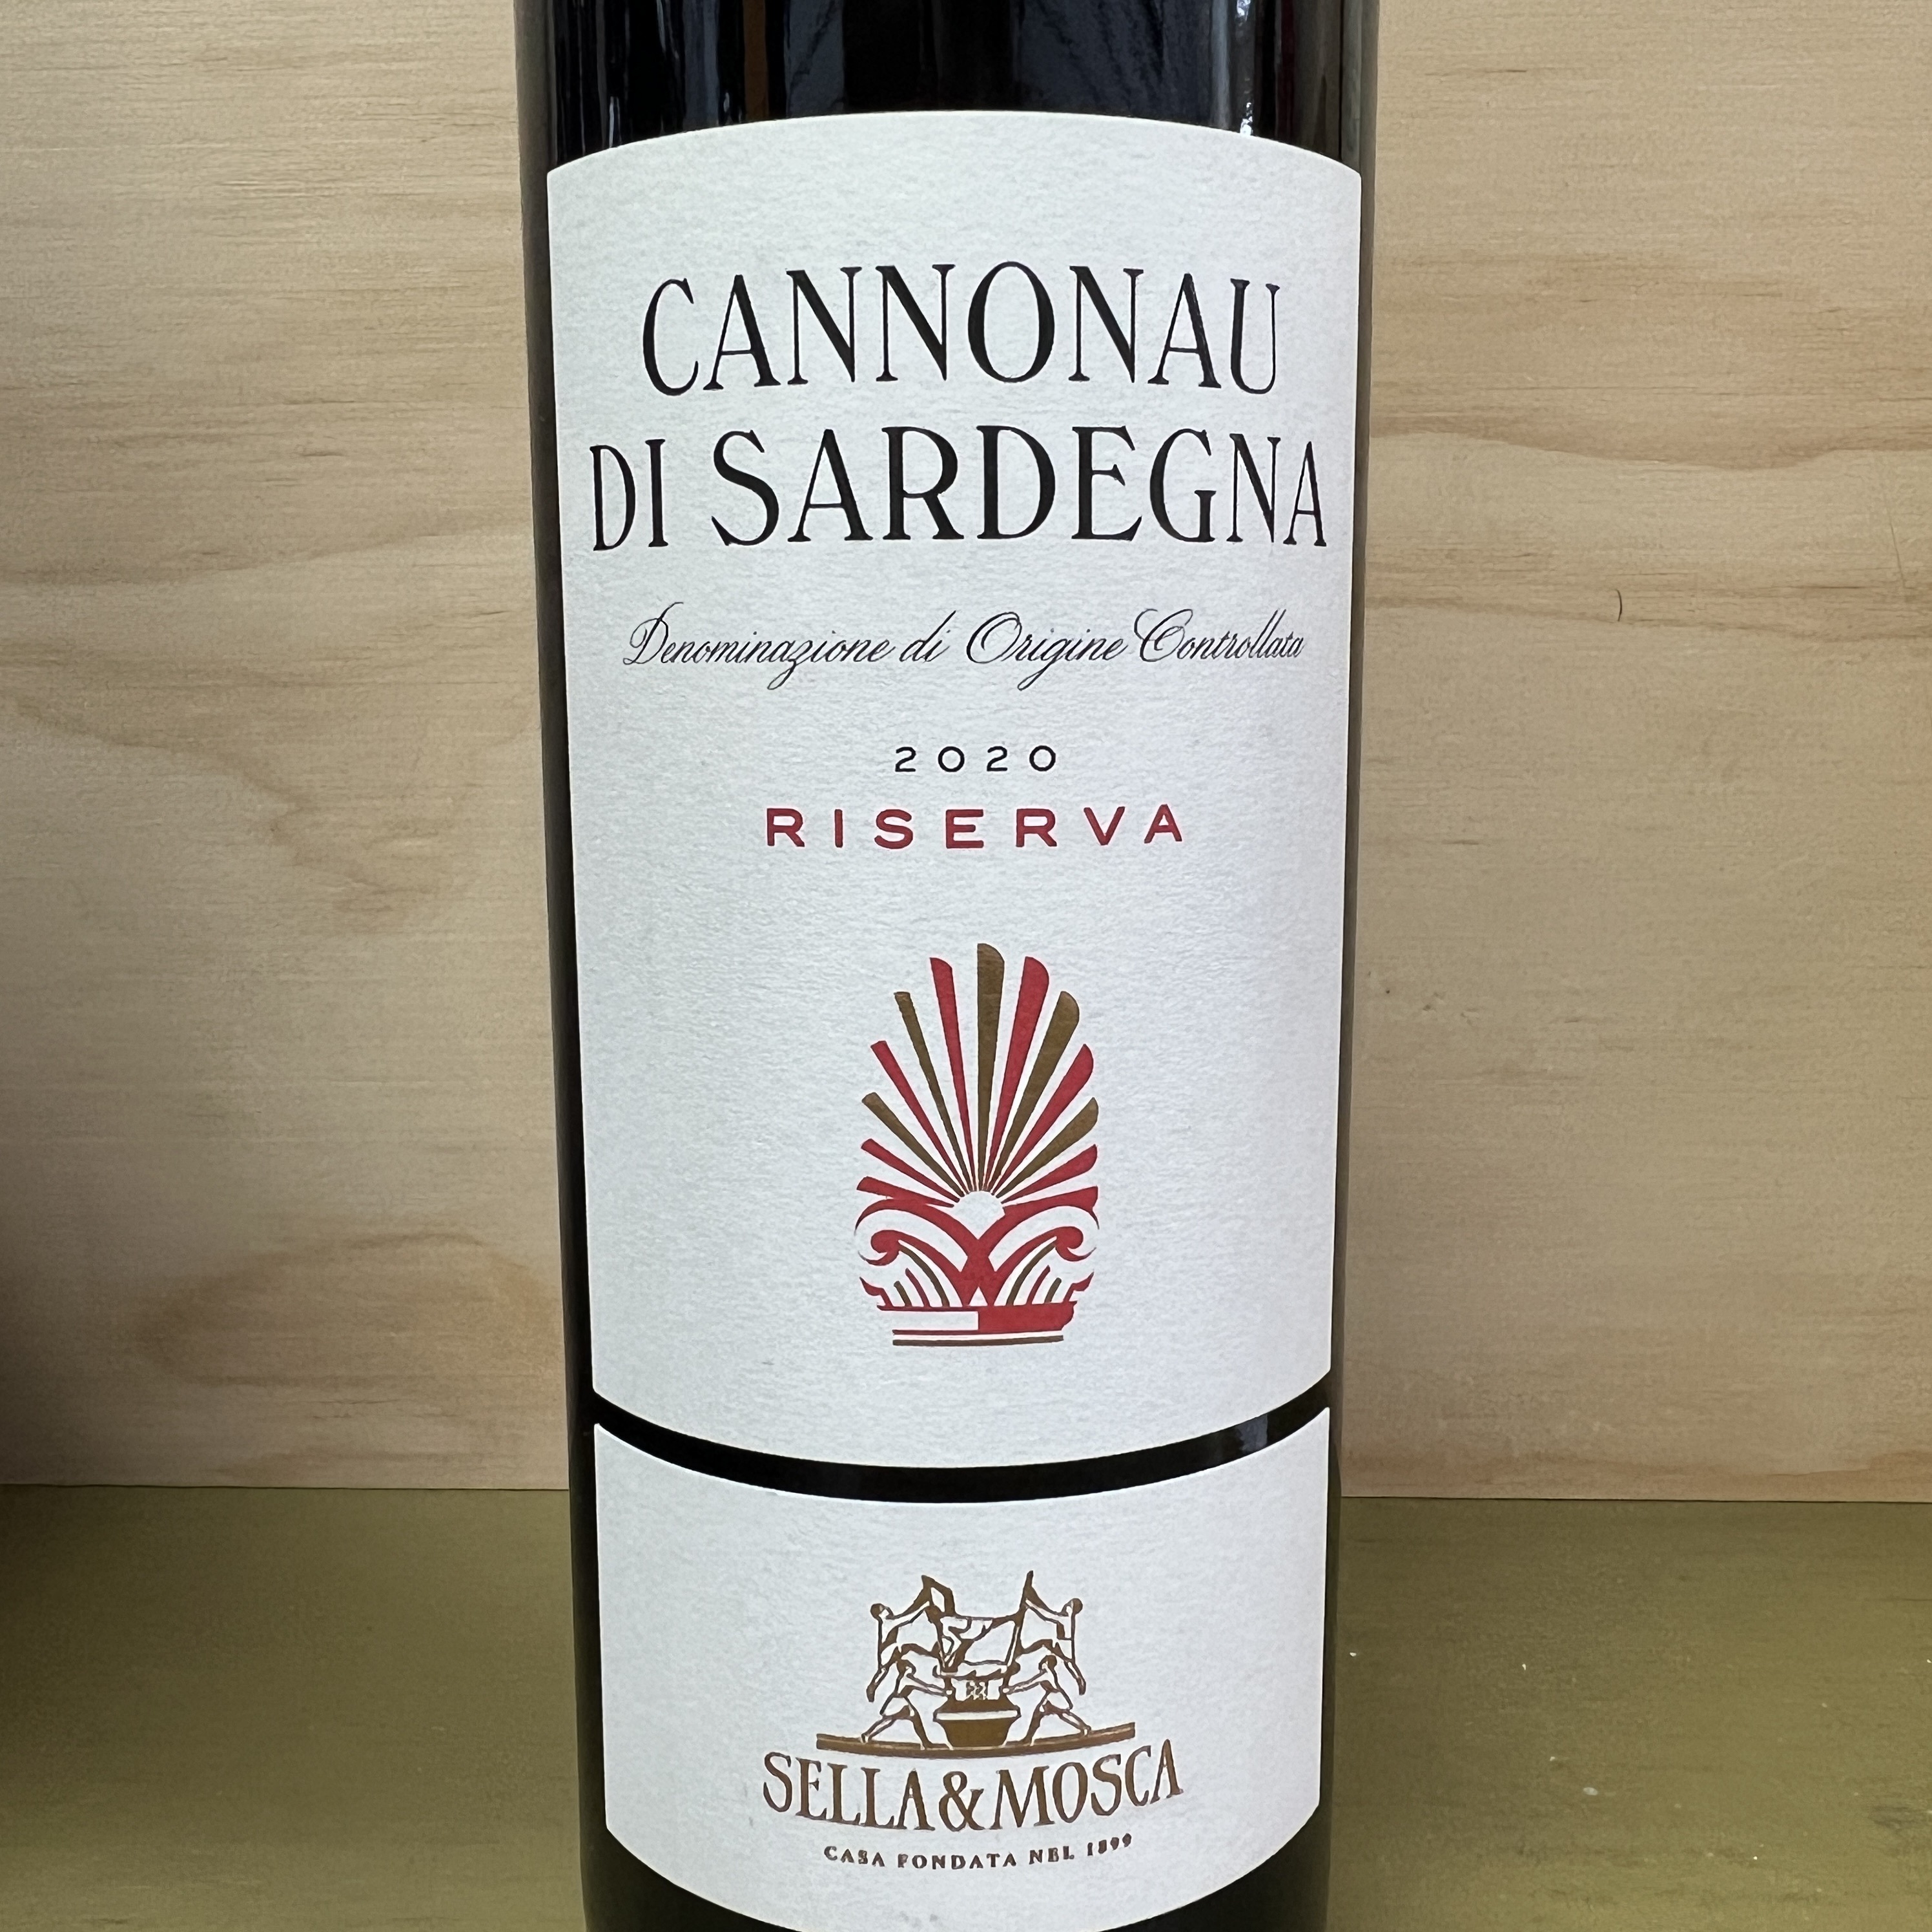 Sella & Mosca Cannonau Di Sardegna Riserva 2020